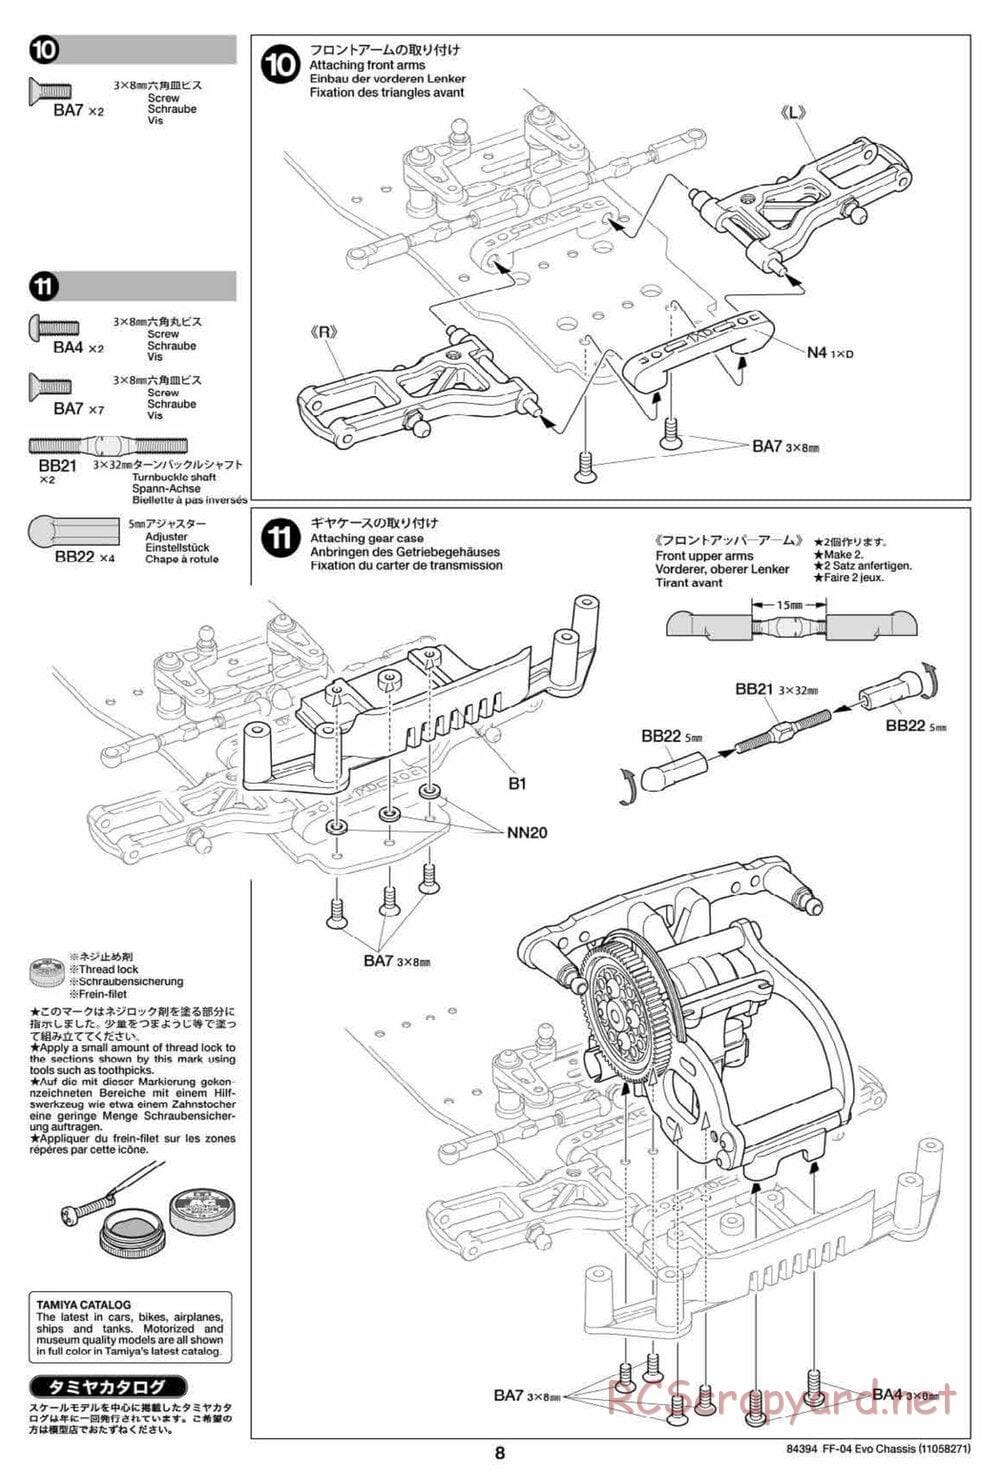 Tamiya - FF-04 Evo Chassis - Manual - Page 8